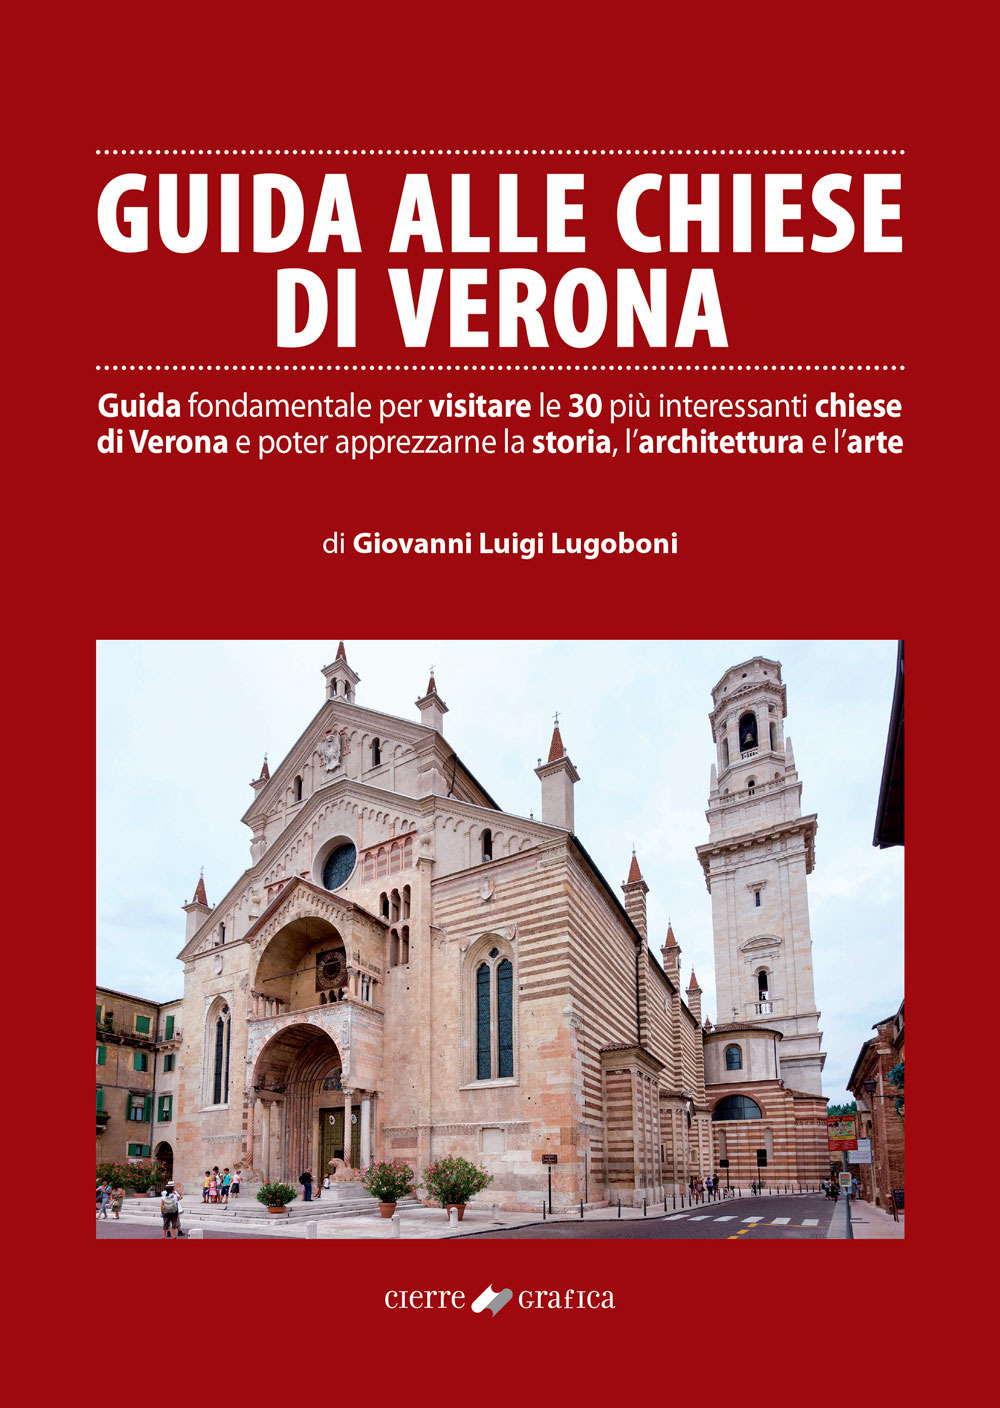 Guida alle chiese di Verona. Guida fondamentale per visitare le 30 più interessanti chiese di Verona e poter apprezzarne la storia, l'architettura e l'arte